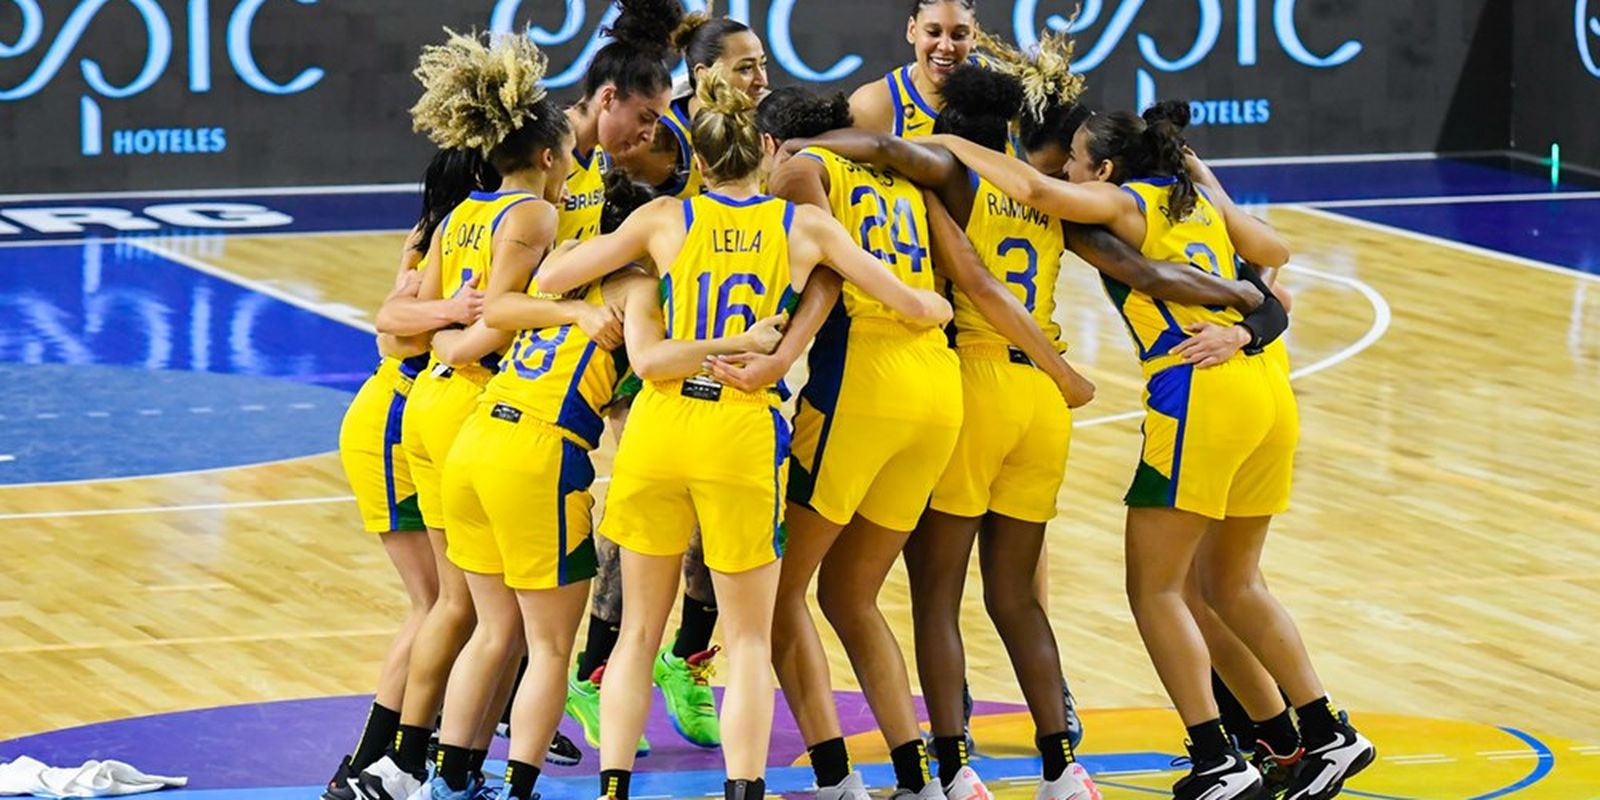 Brasil alcança final do Sul-Americano de basquete feminino